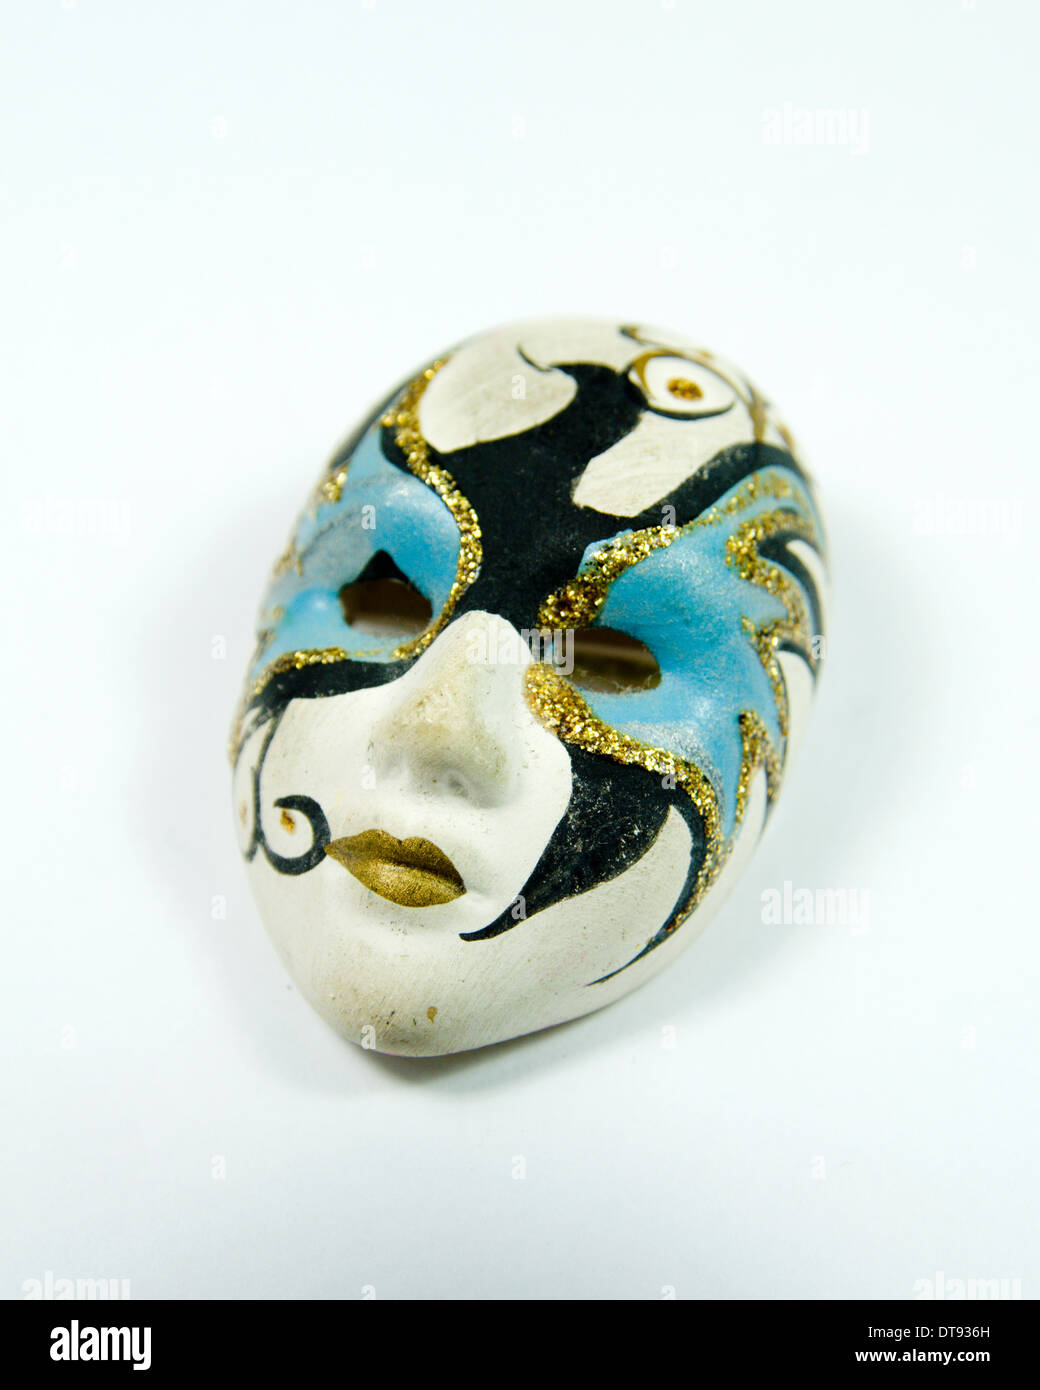 Miniature masquerade mask ornament. Stock Photo